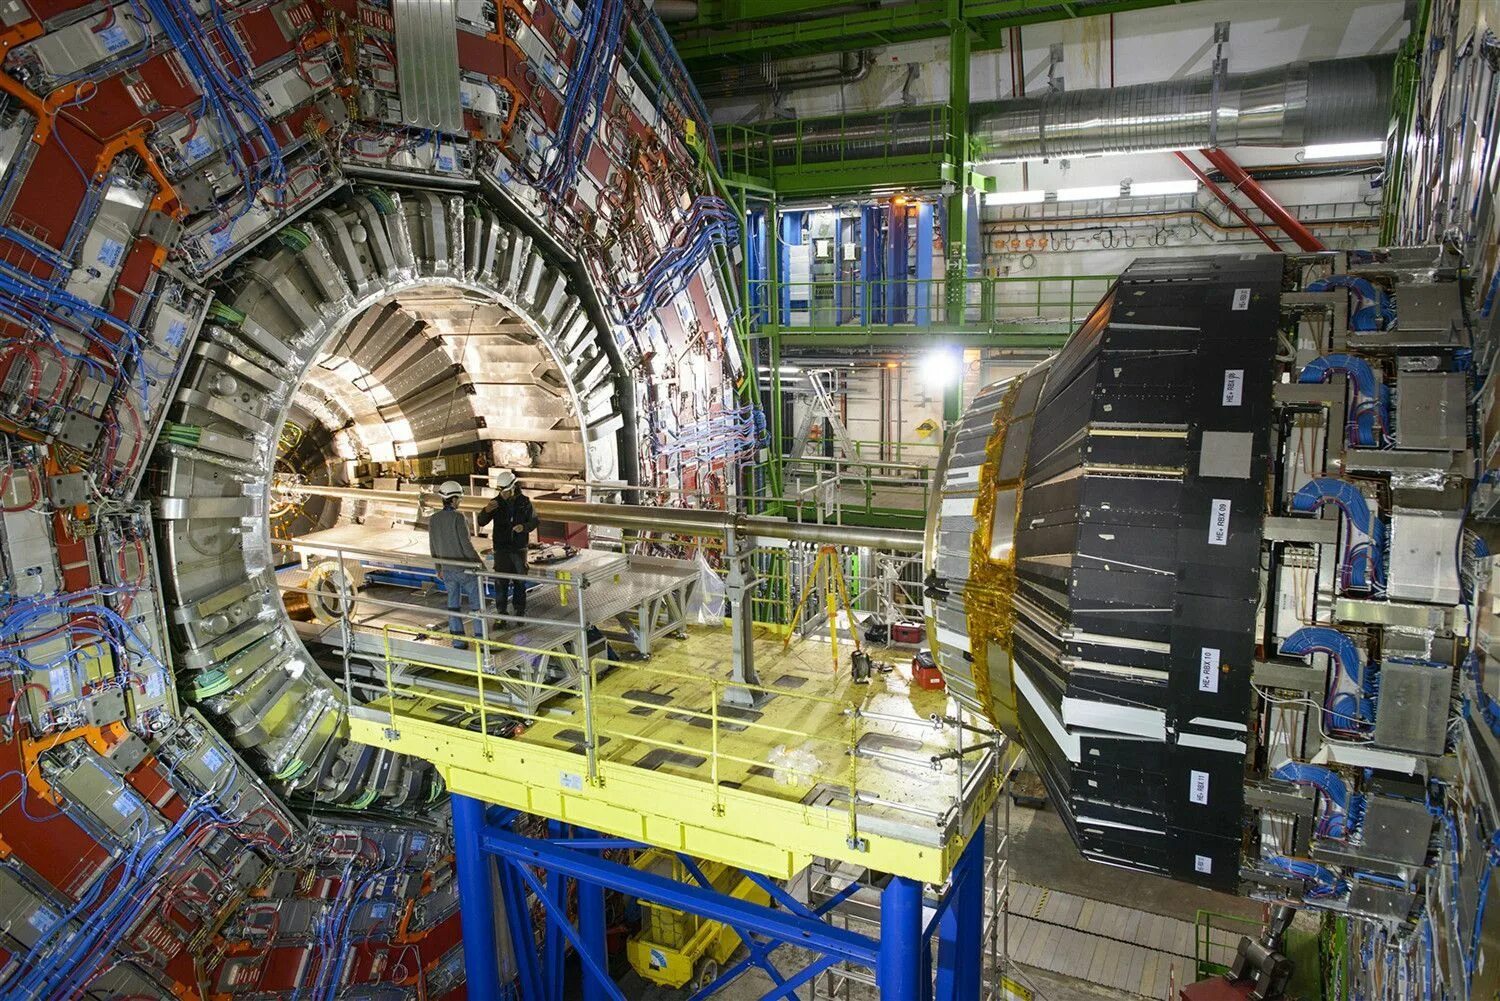 Большой адронный коллайдер ЦЕРН. Швейцария ЦЕРН коллайдер. LHCB большой адронный коллайдер. ЦЕРН ускоритель частиц. Андроидный коллайдер это